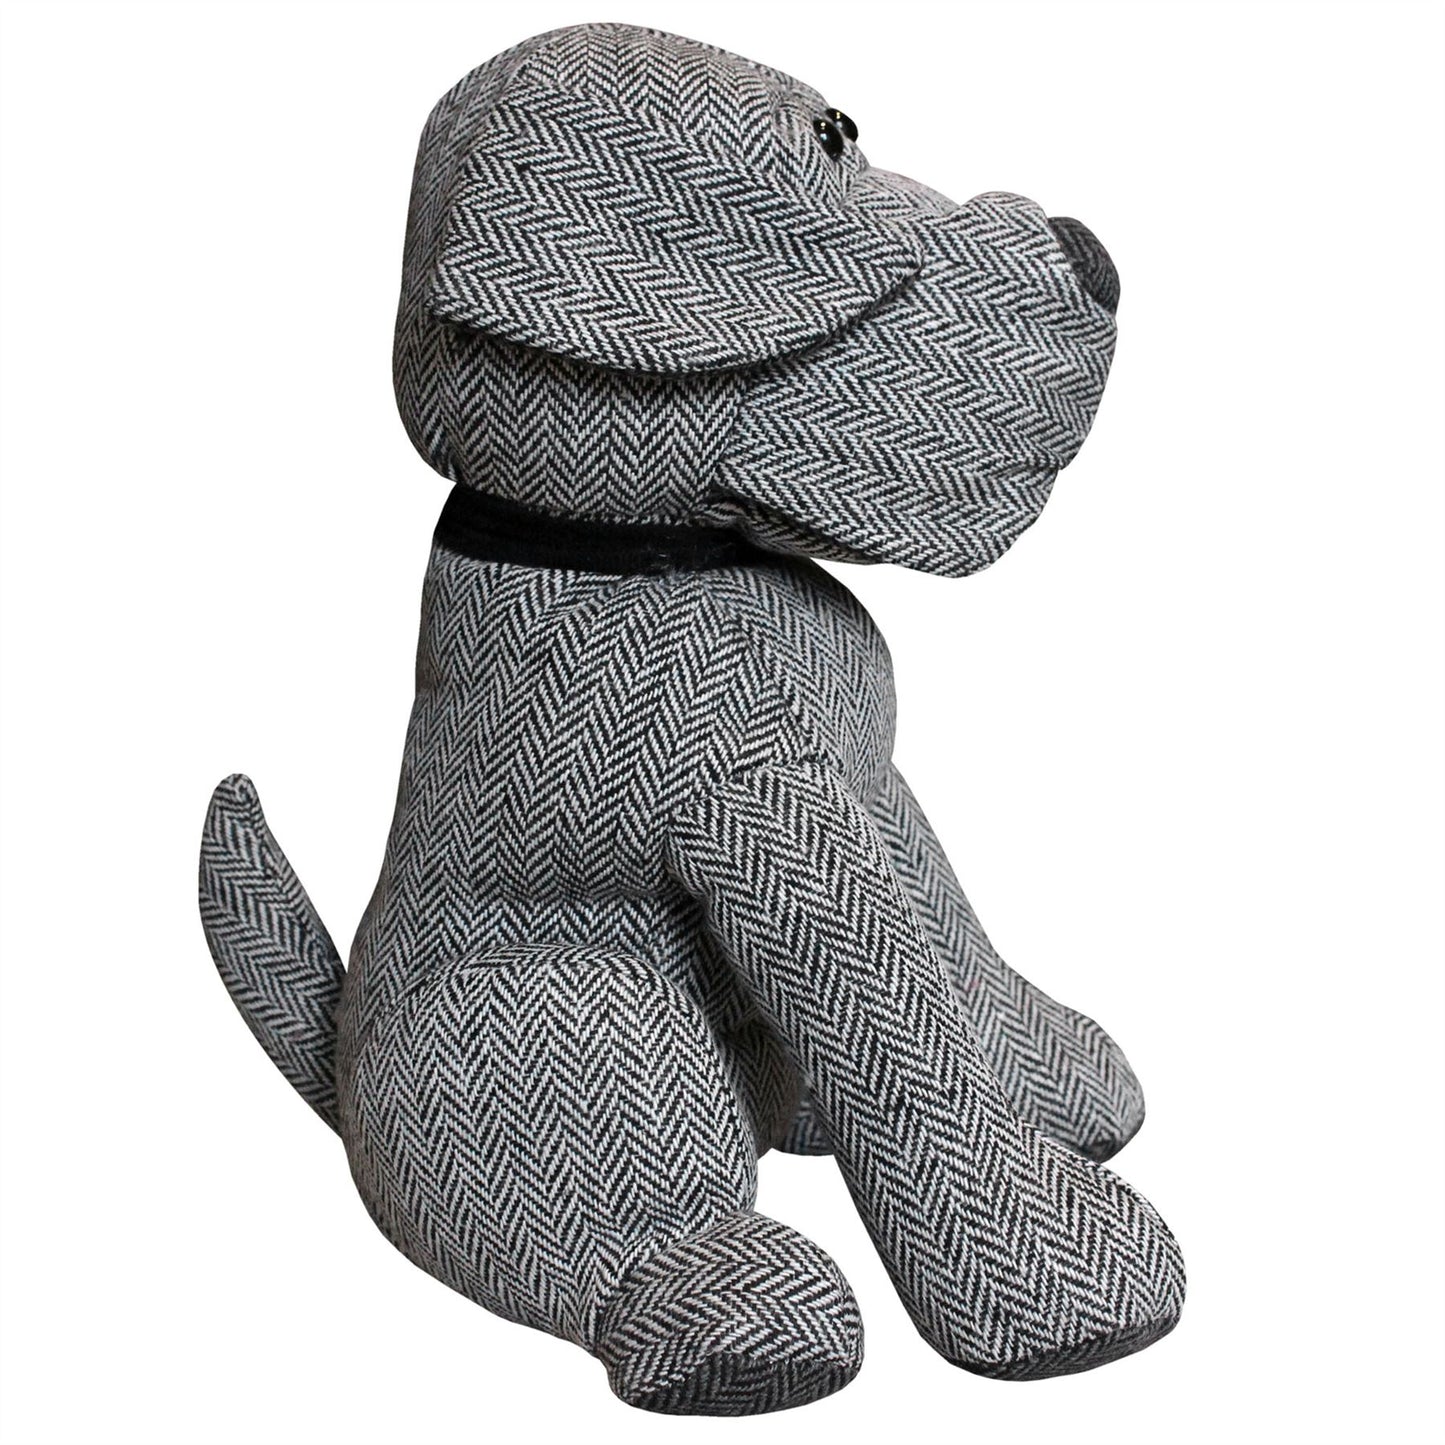 Monty Grey Herringbone Dog Doorstop | Novelty Fabric Dog Shaped Door Stop - 27cm